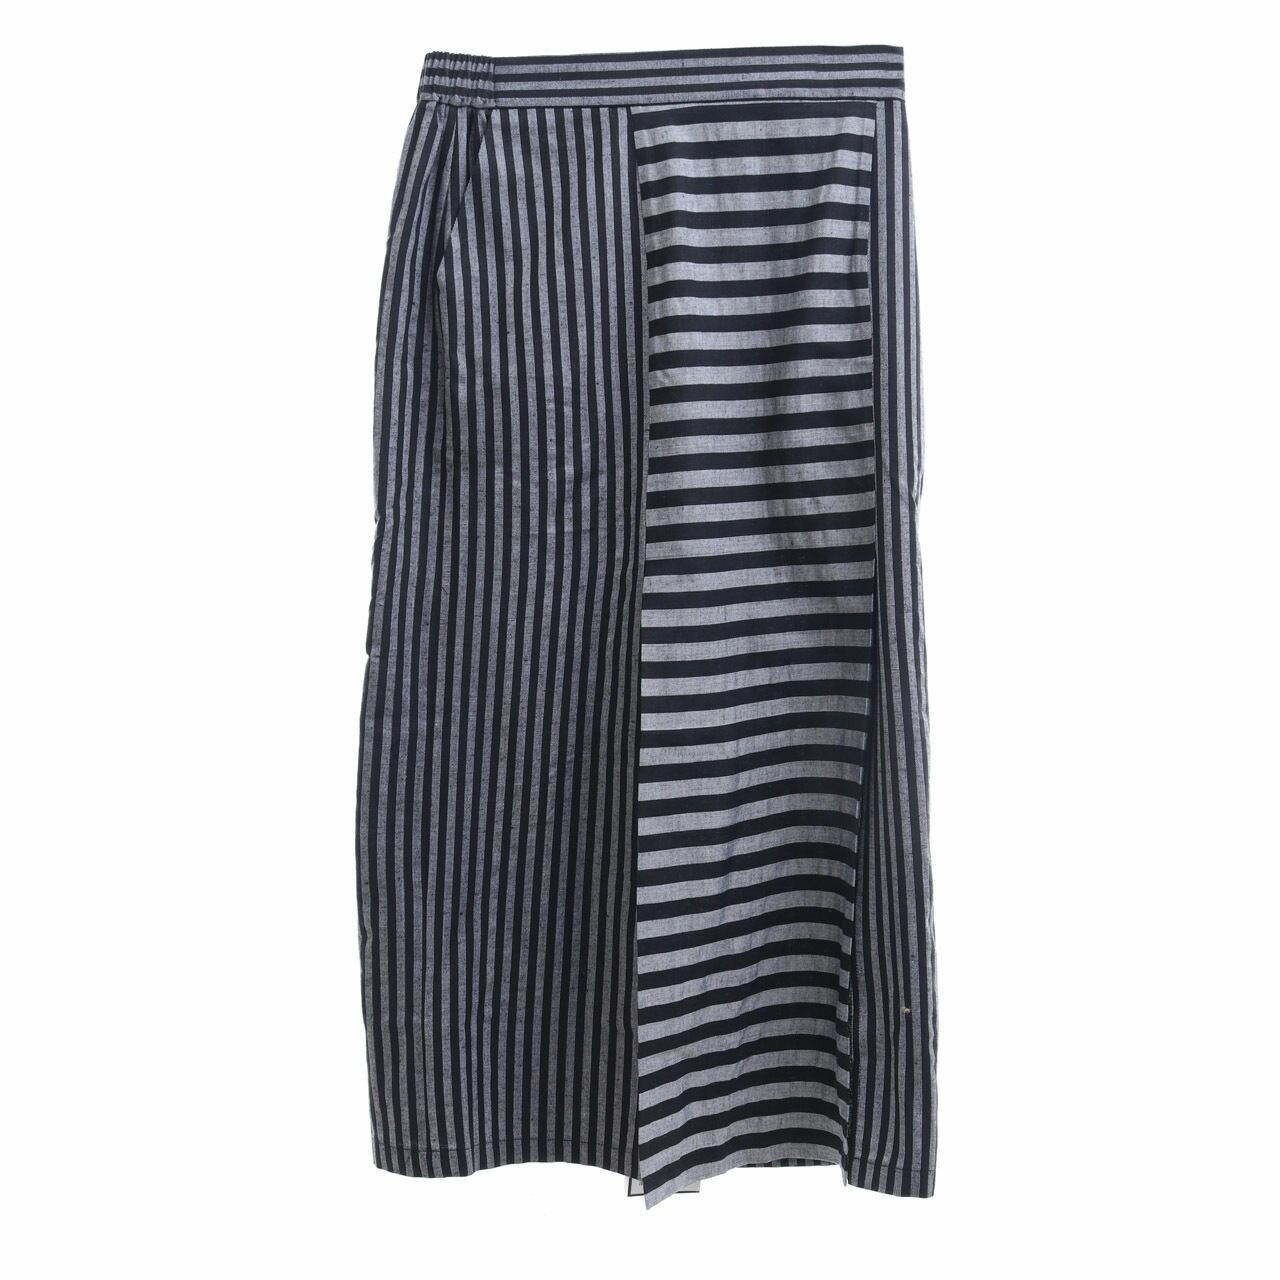 Imaji Studio Grey & Black Striped Midi Skirt